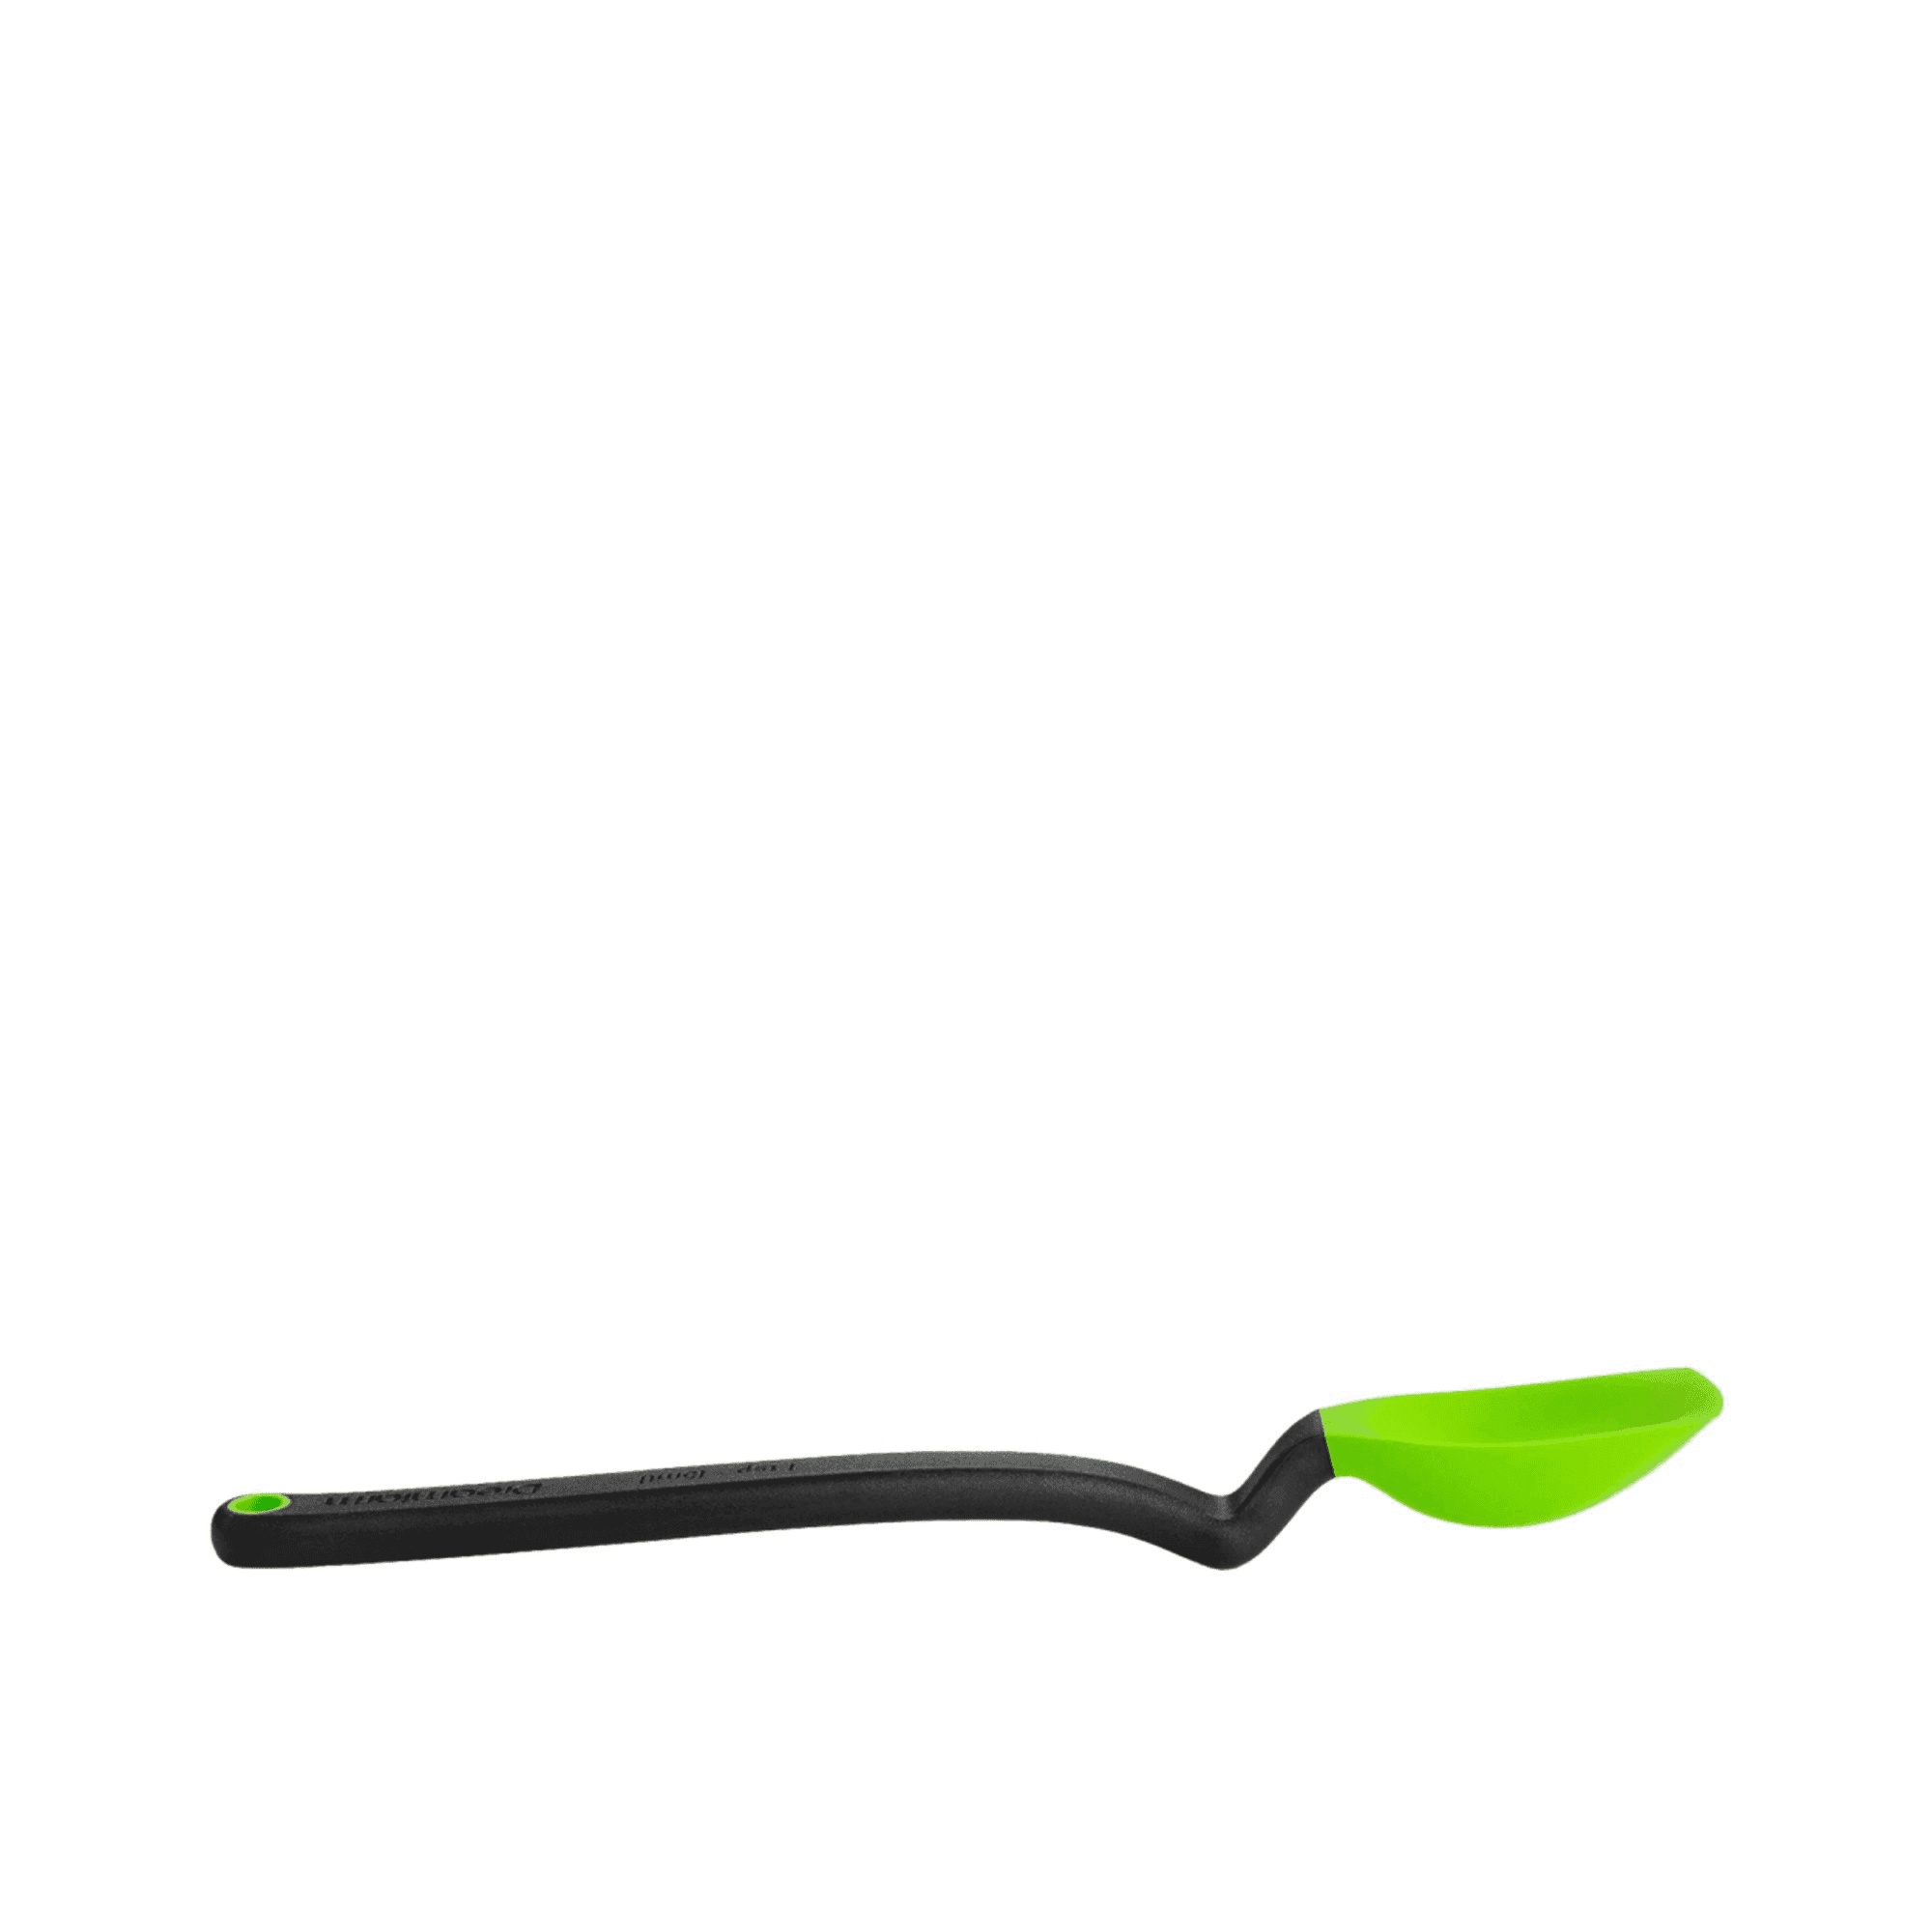 Dreamfarm Mini Supoon Scraping Spoon Green Image 2